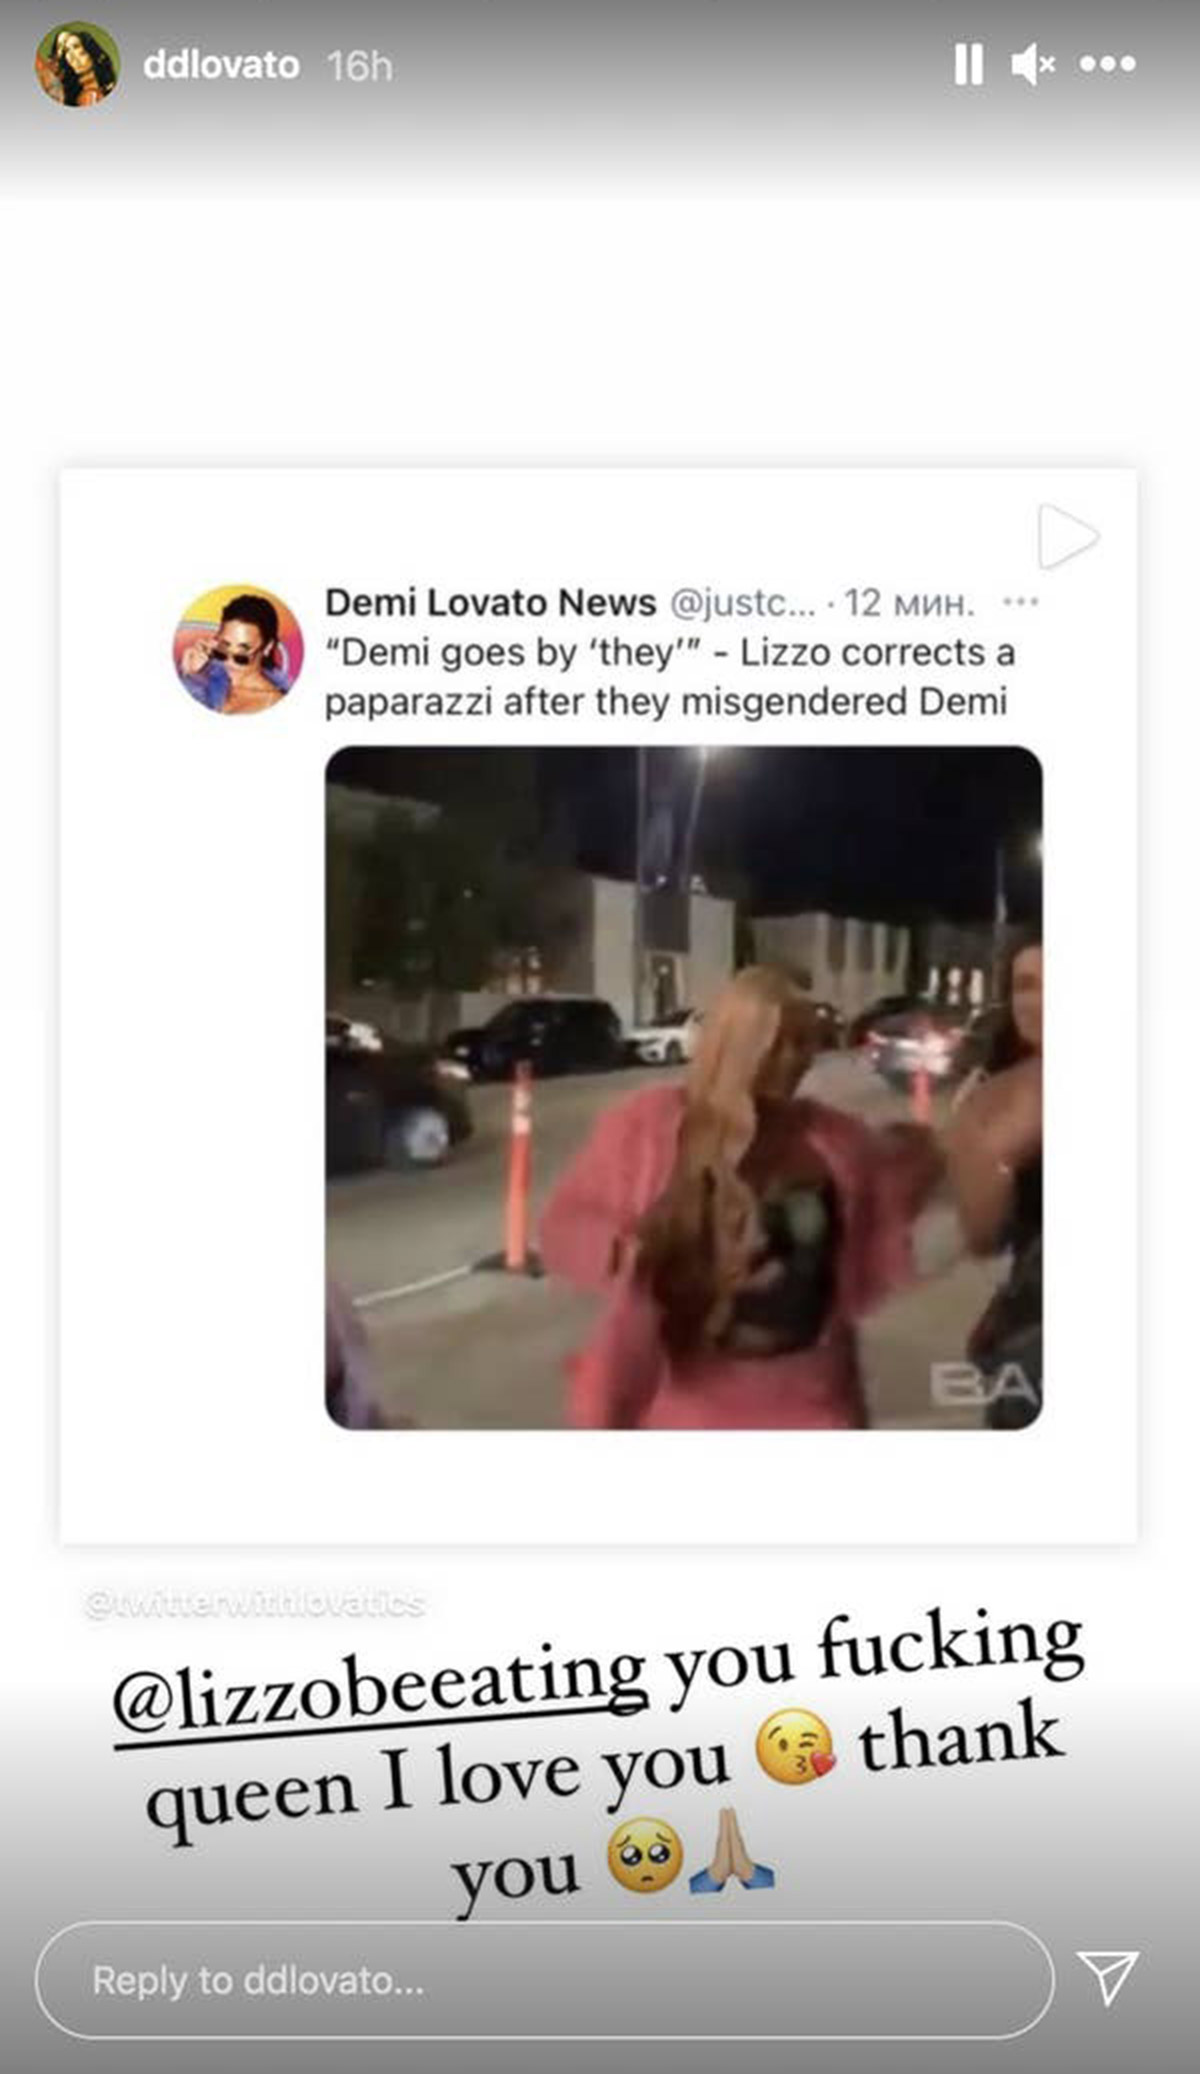 Video de Lizzo corrigiendo a paparazzi sobre pronombre de Demi Lovato se hace viral